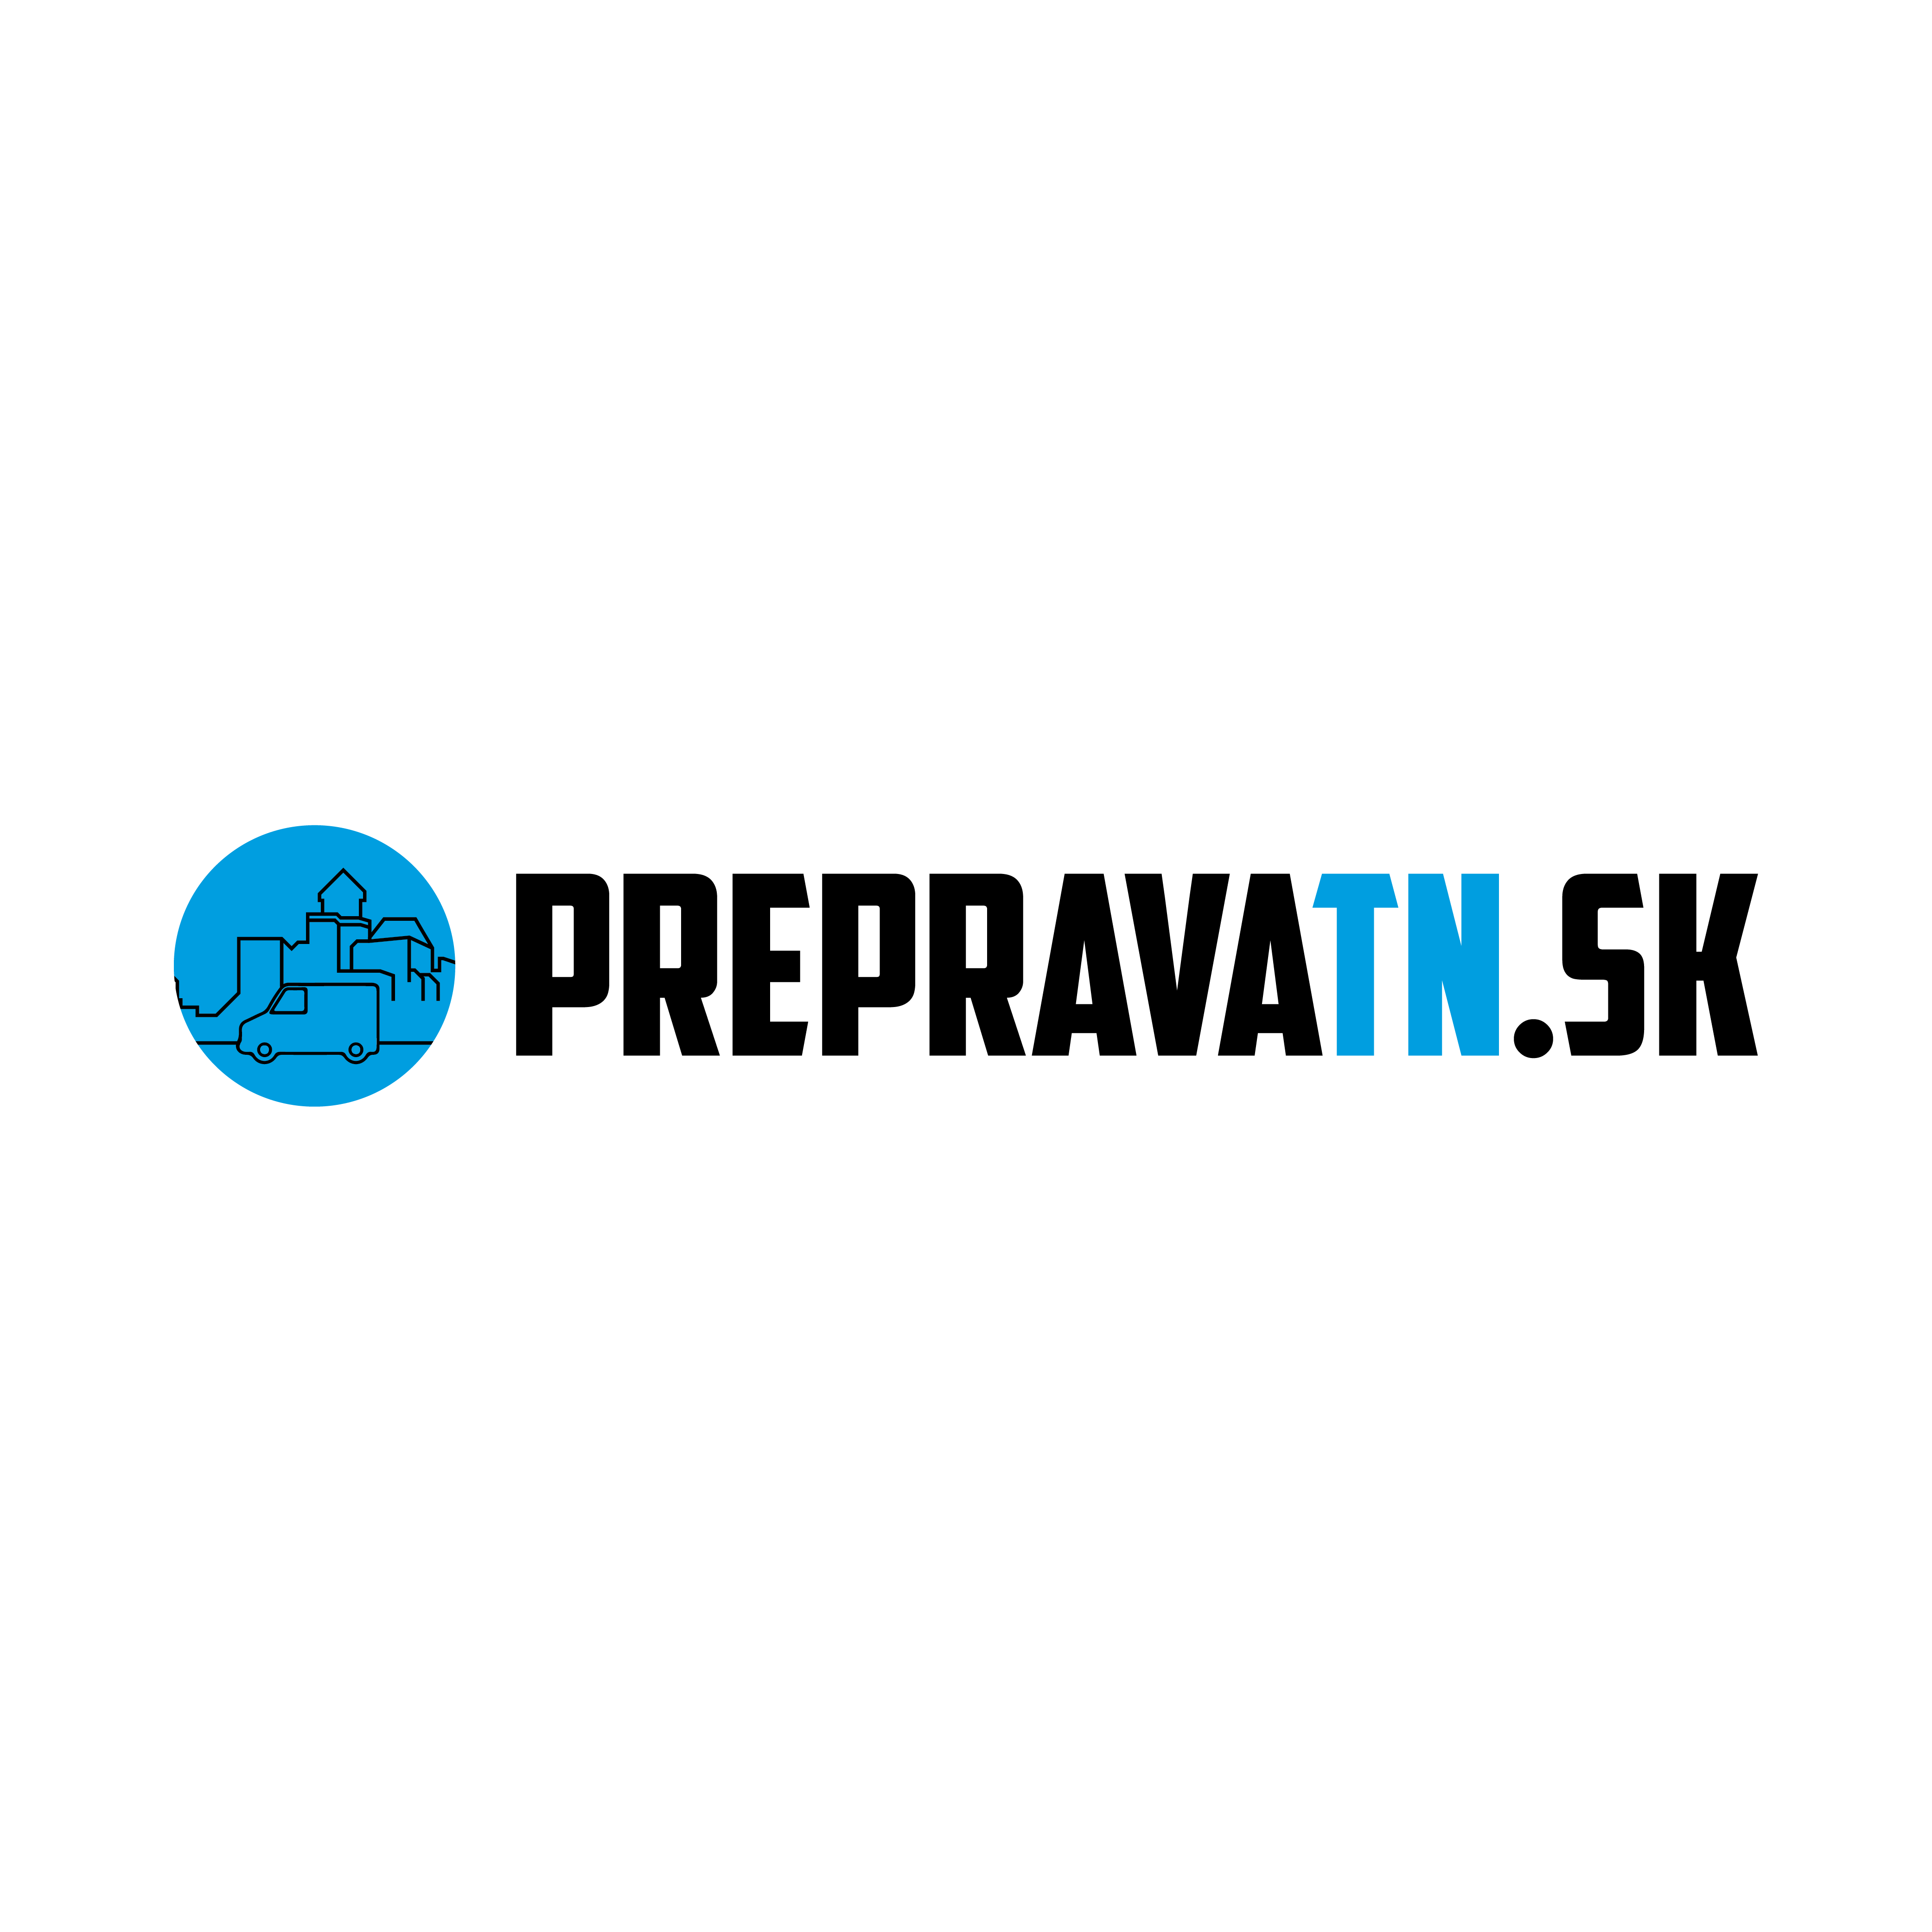 PREPRAVATN.sk